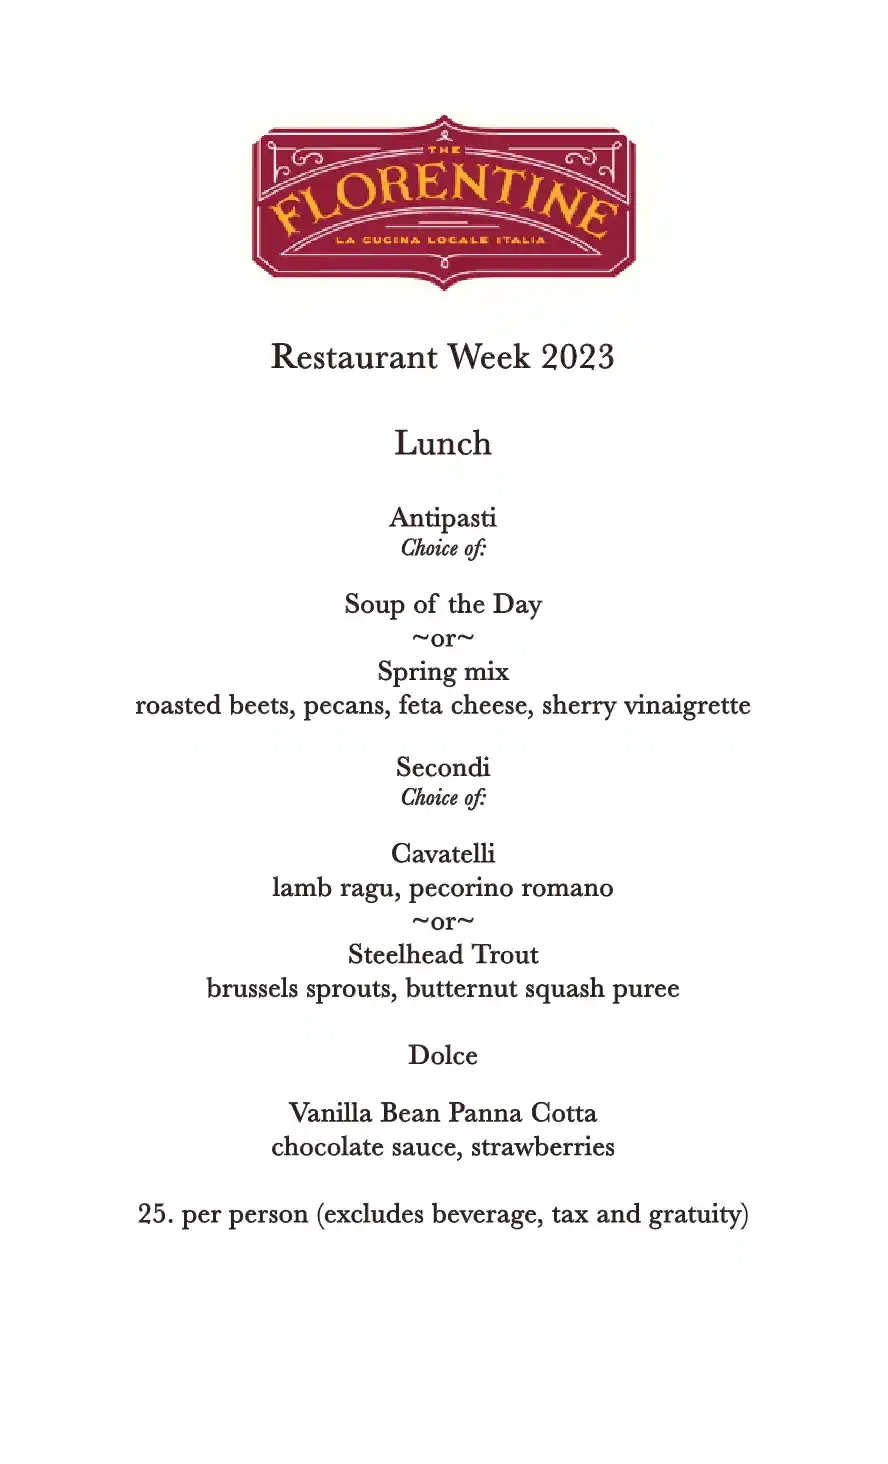 Chicago Restaurant Week 2023 Menu The Florentine